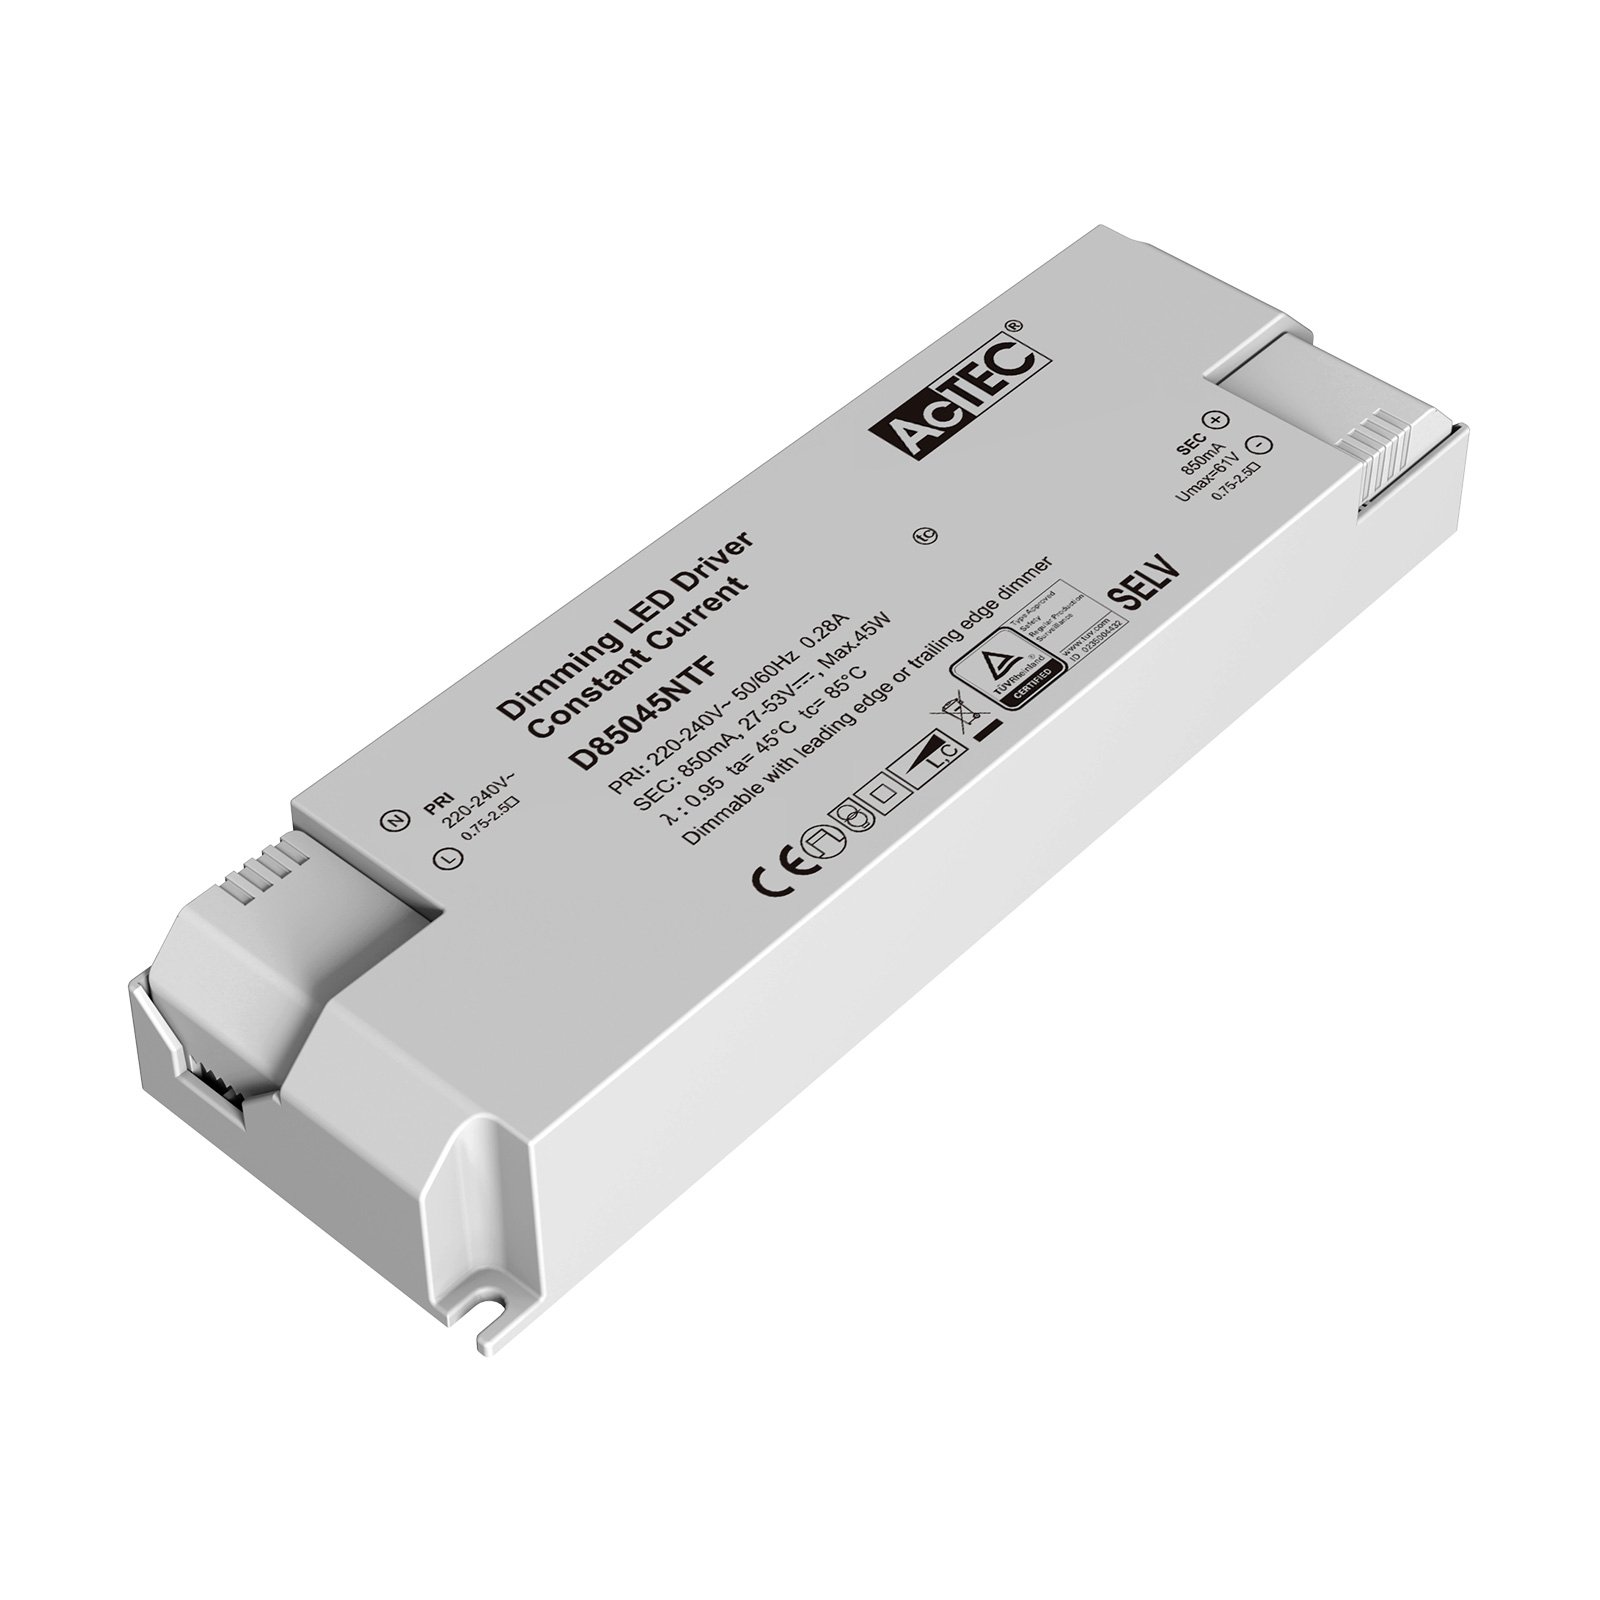 AcTEC Triac LED ovladač CC max. 45W 850mA